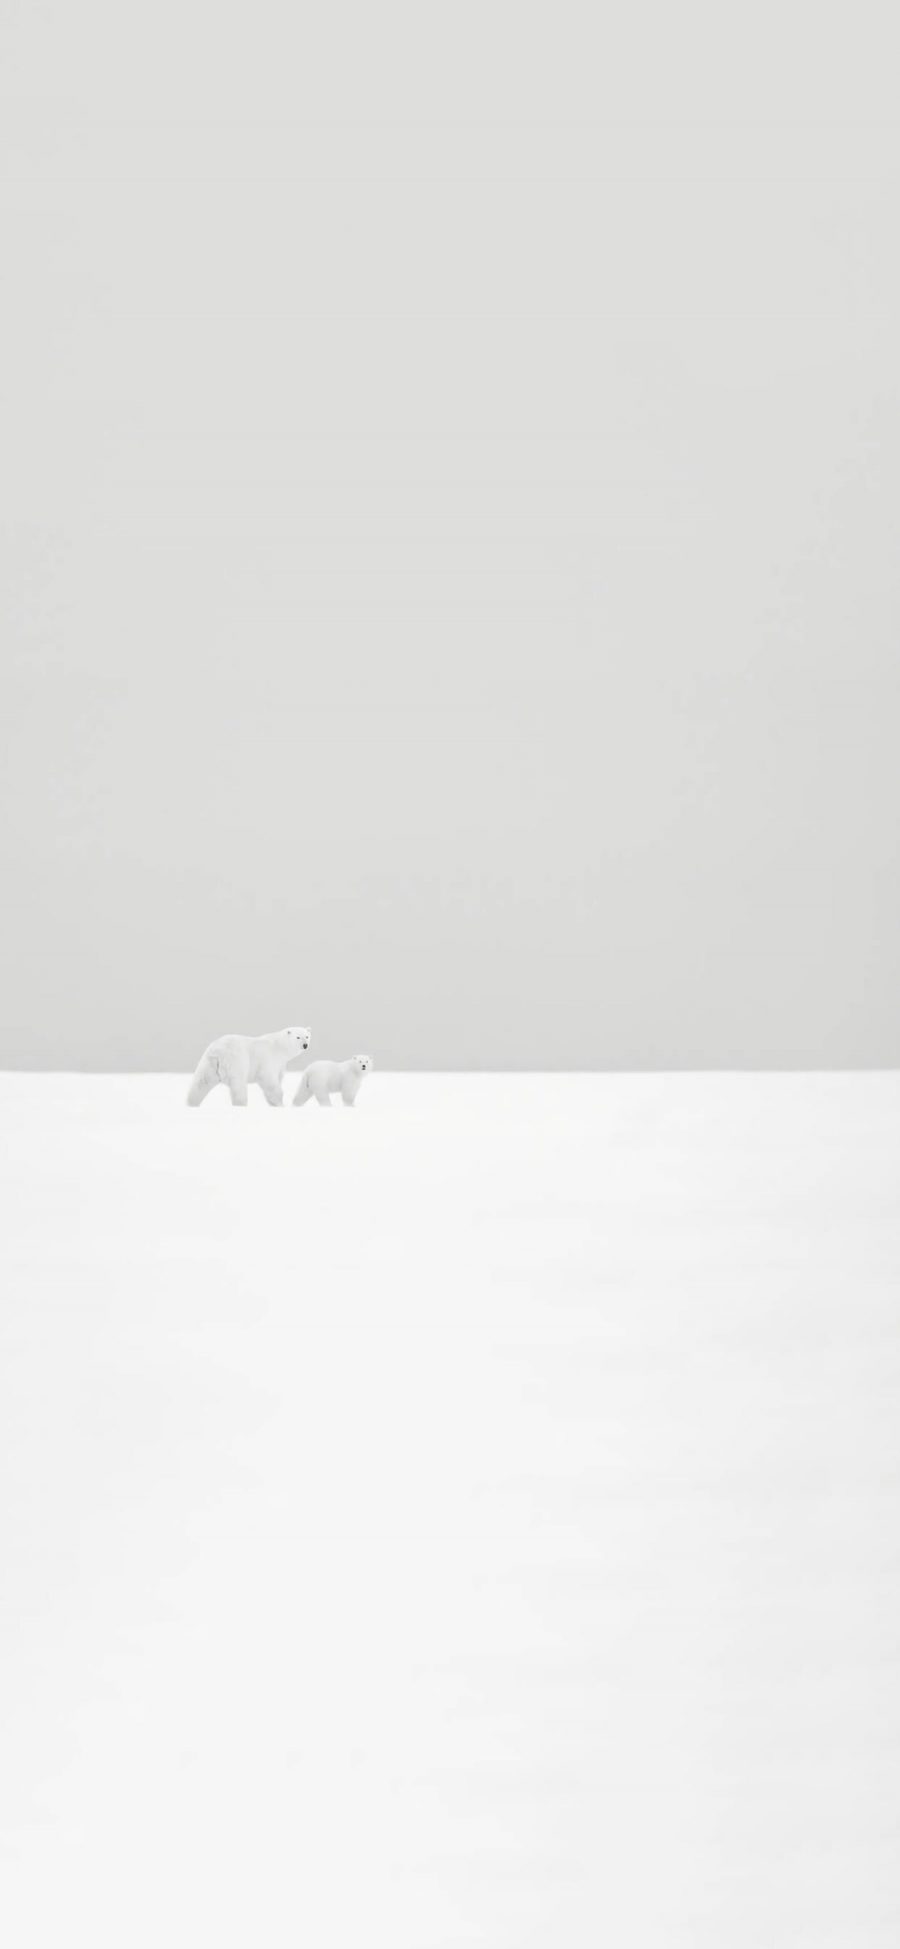 [2436×1125]北极熊 雪地 白色 萌 可爱 简约 苹果手机壁纸图片